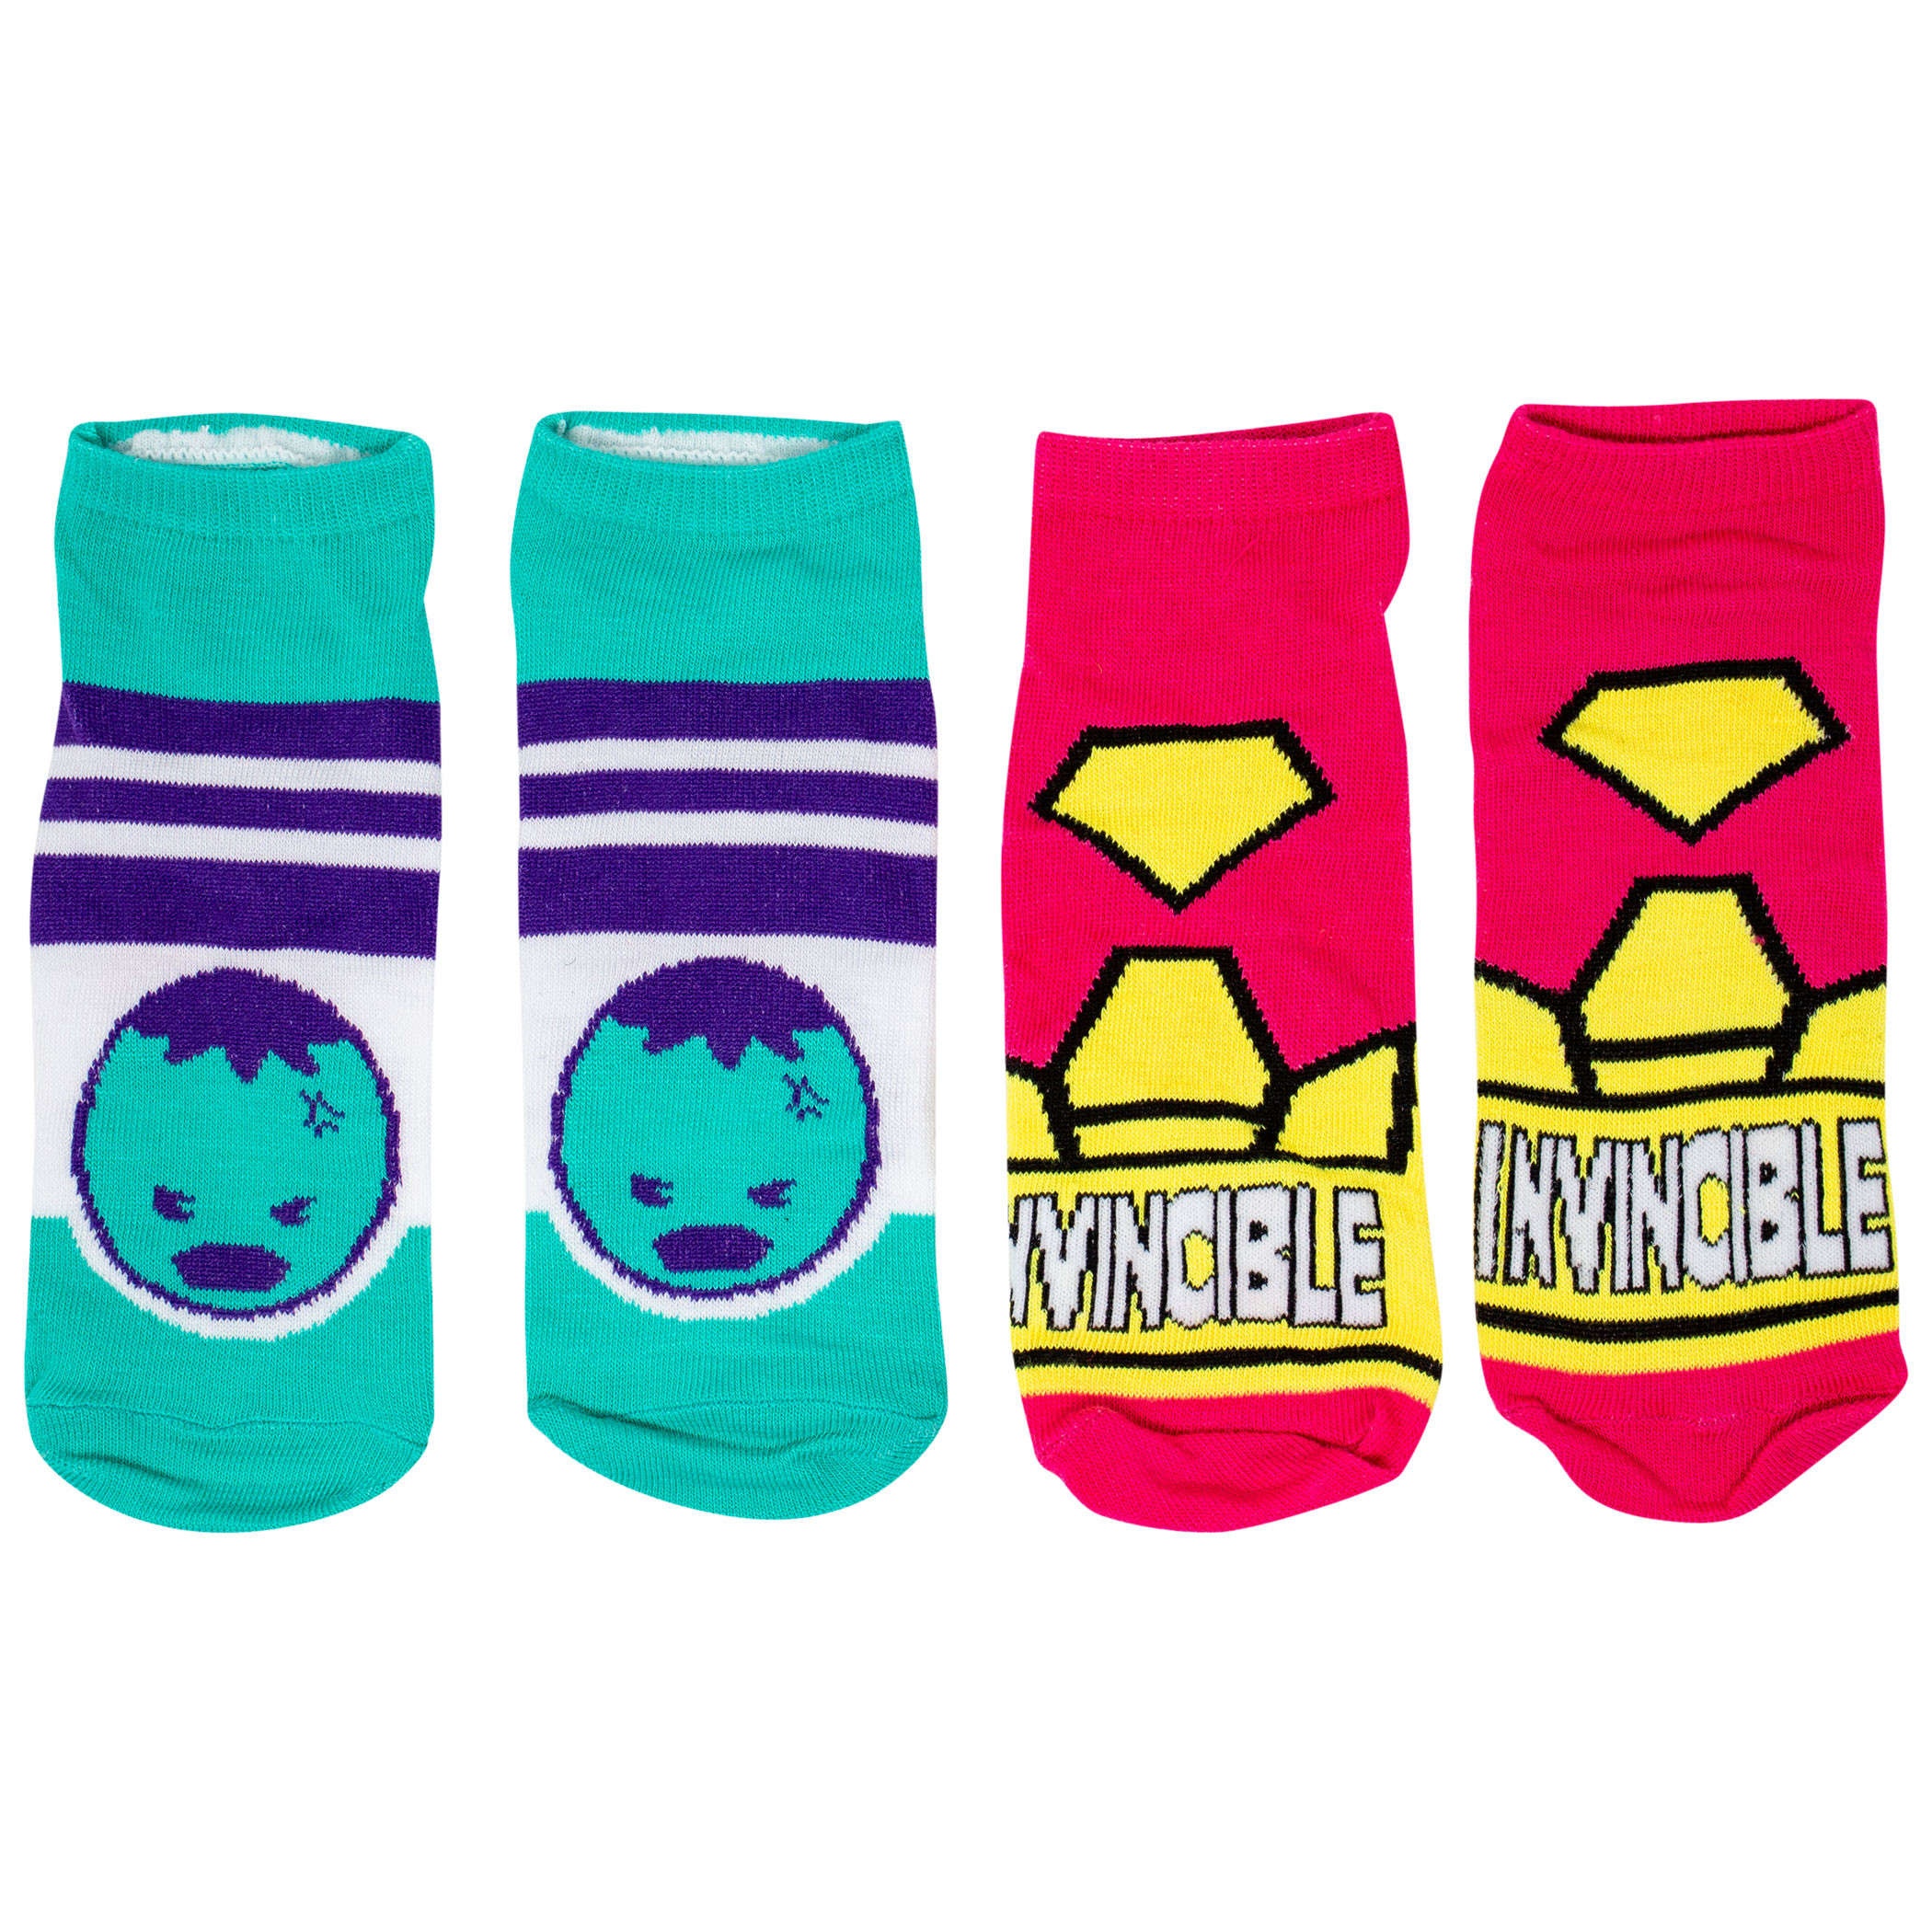 Marvel Heroes Sock of the Week Assorted Women's Shorties Socks 7-Pair Box Set